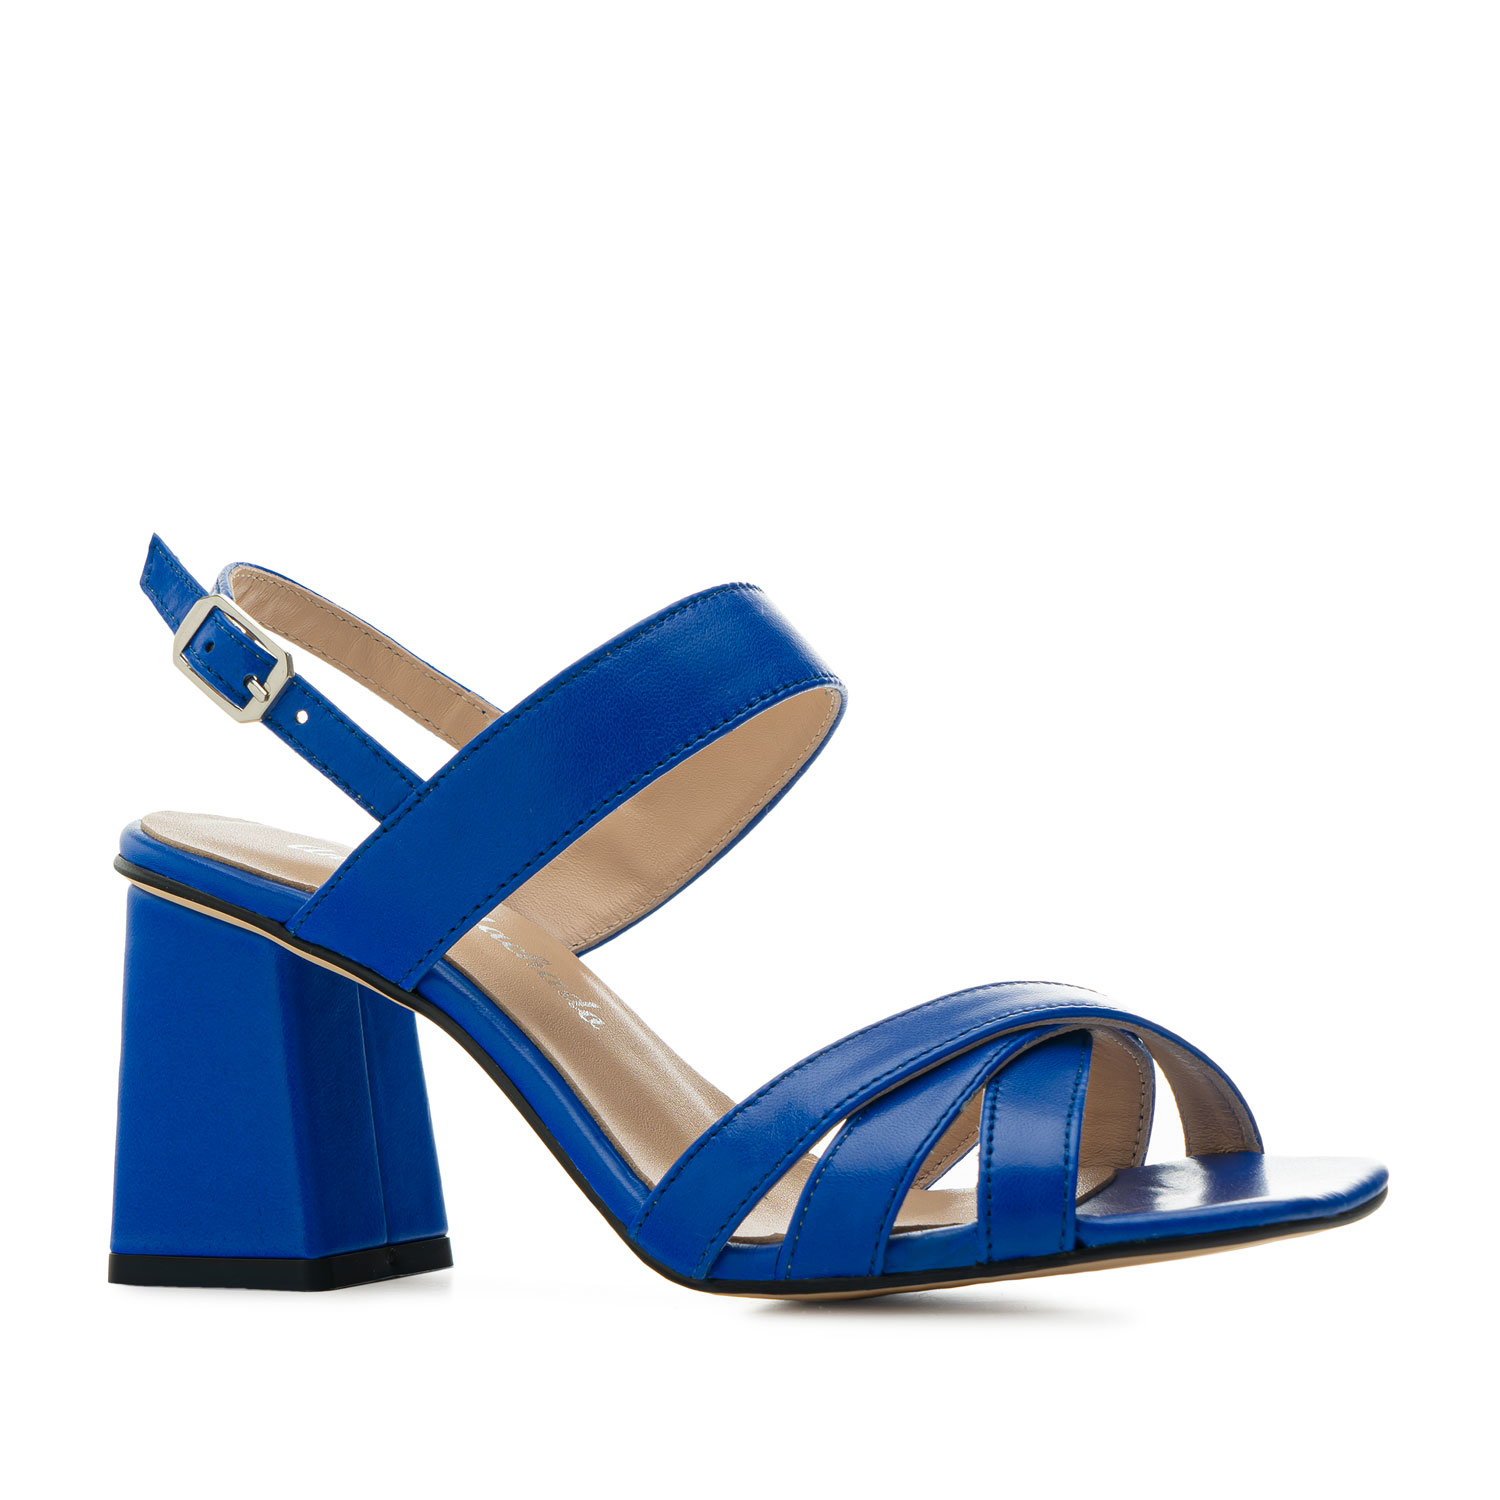 Sandalias tacón ancho en piel color Azul - Tallas de la 32 a 45